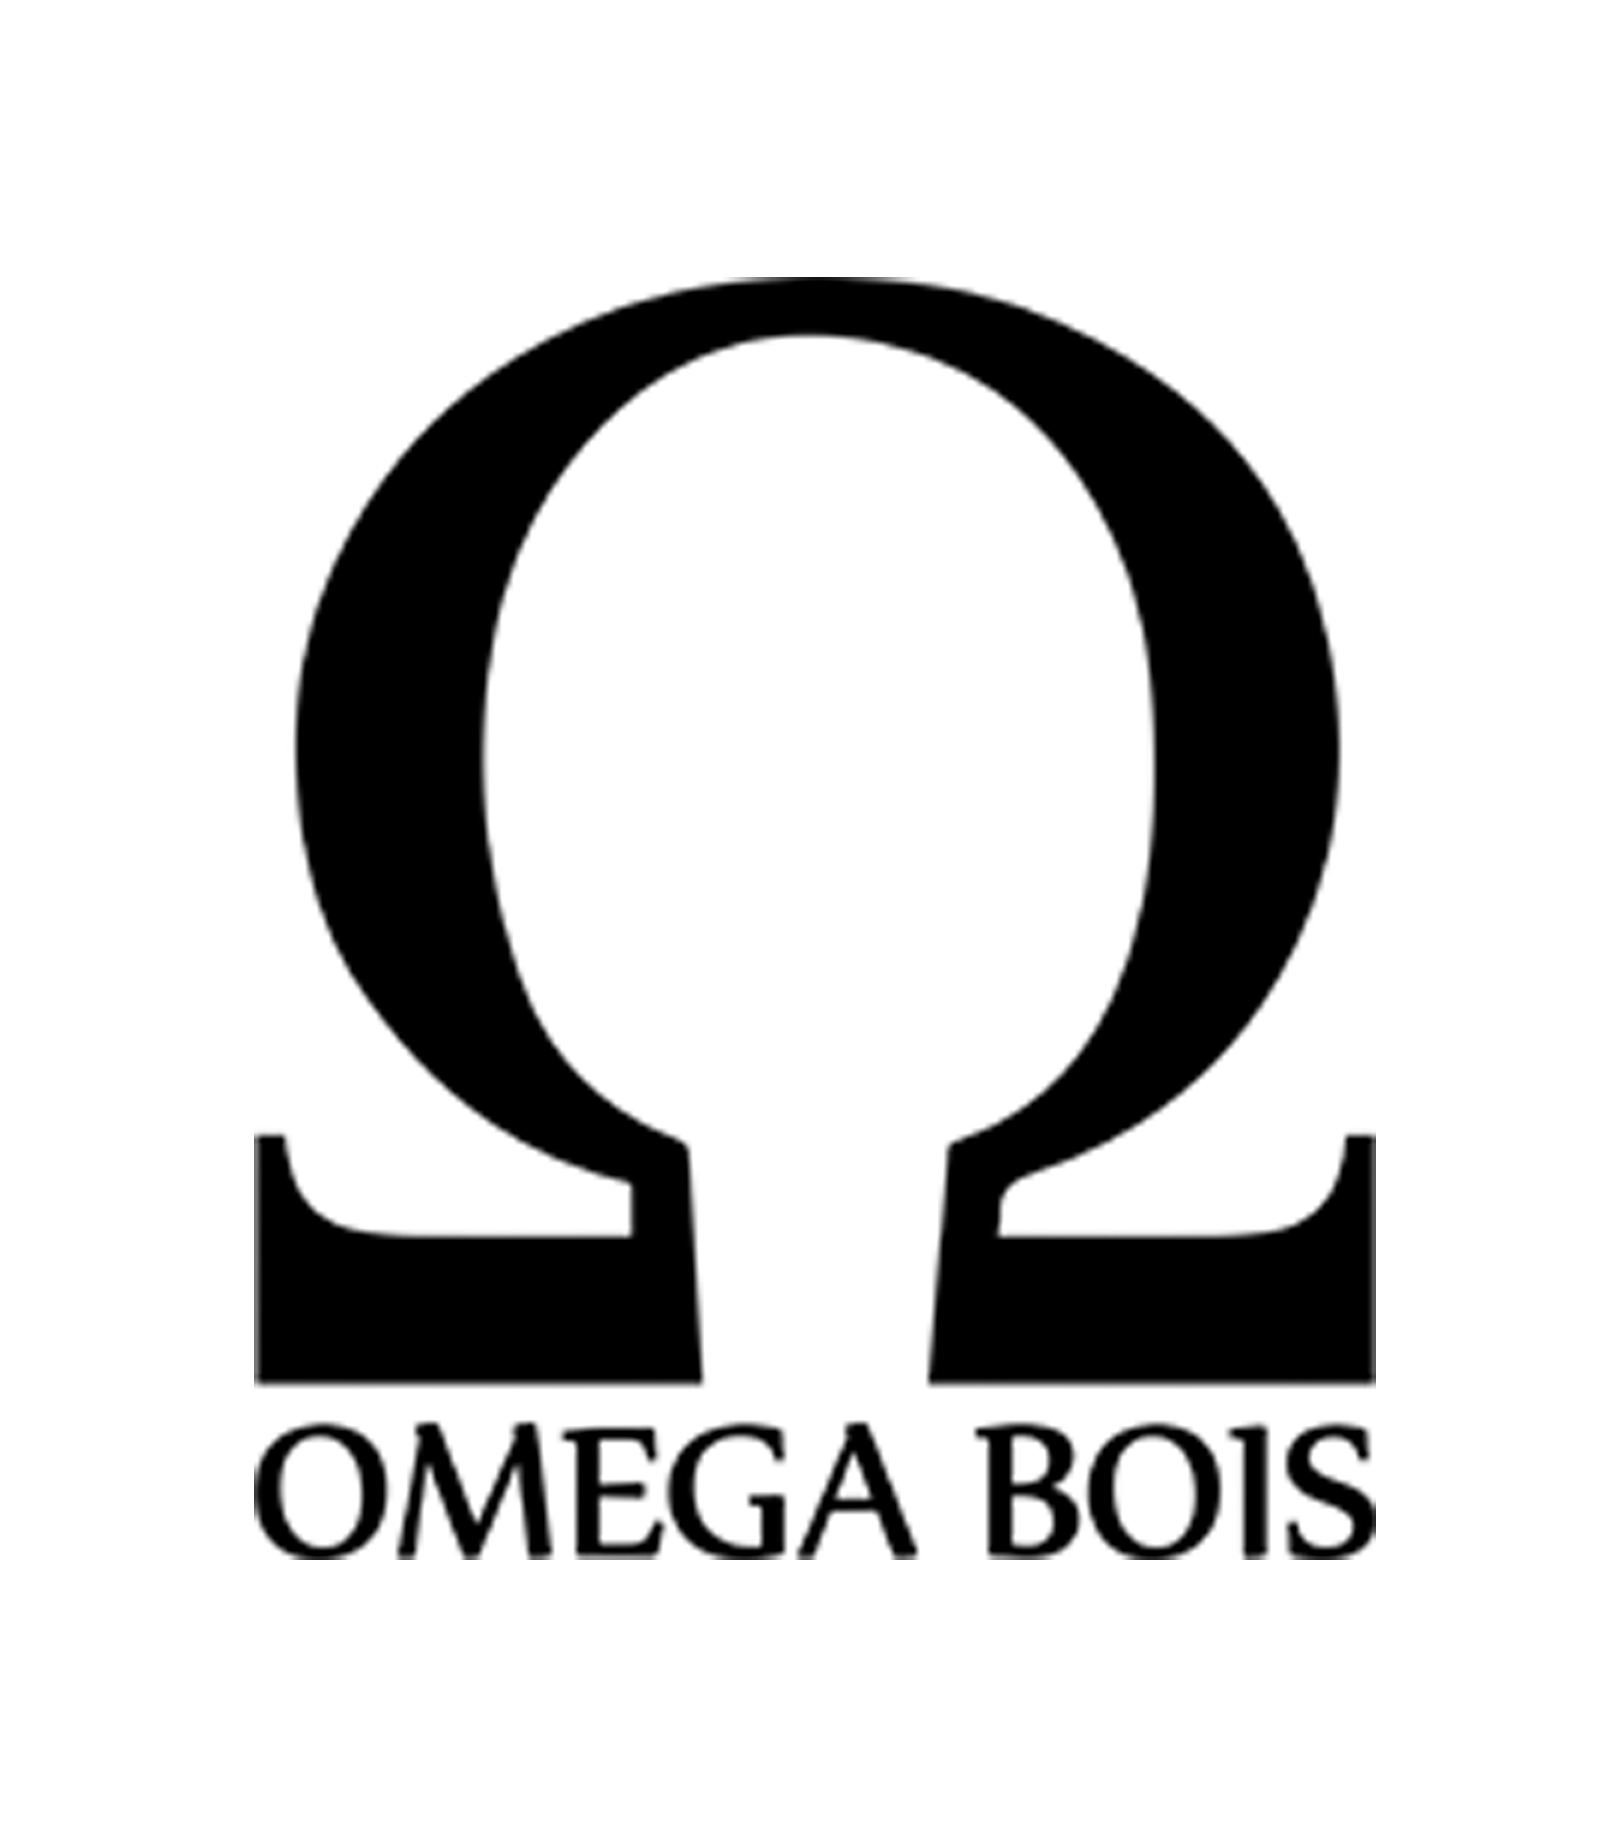 Omega Bois